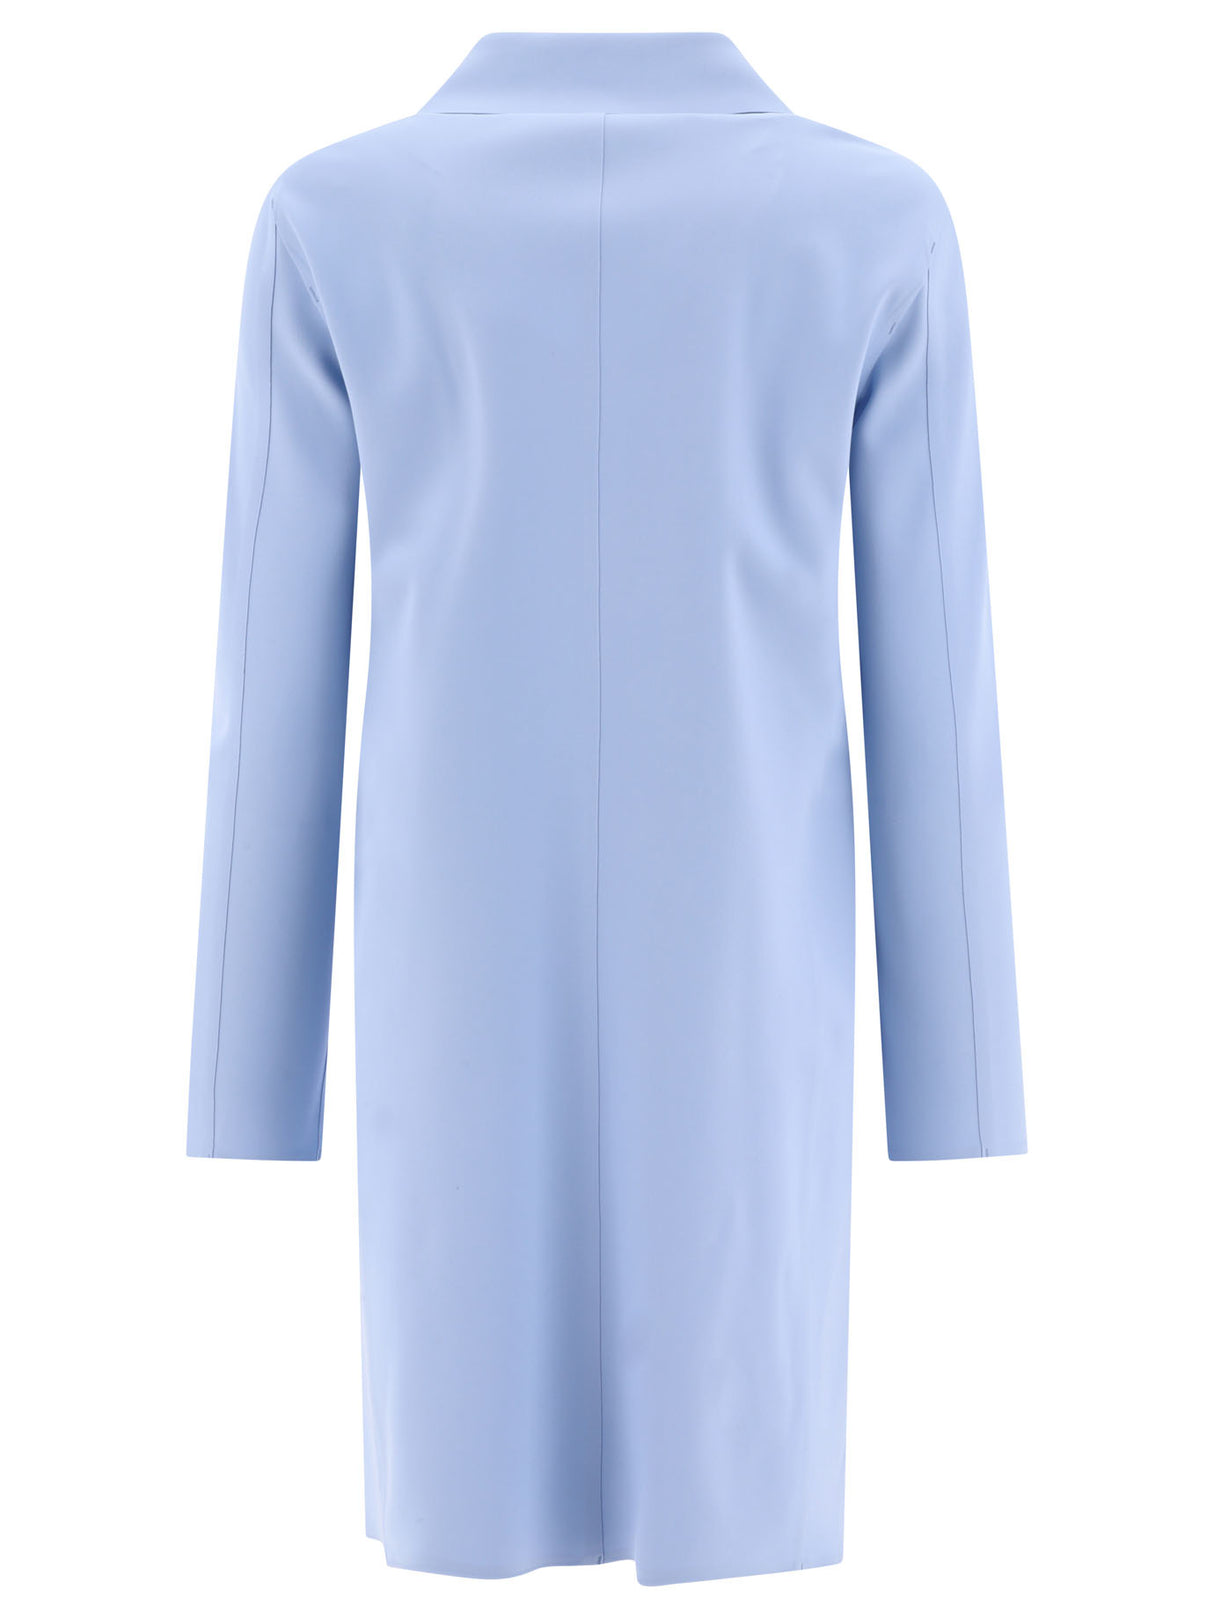 Áo khoác HERNO màu xanh nhẹ SS24 PEF cho phụ nữ